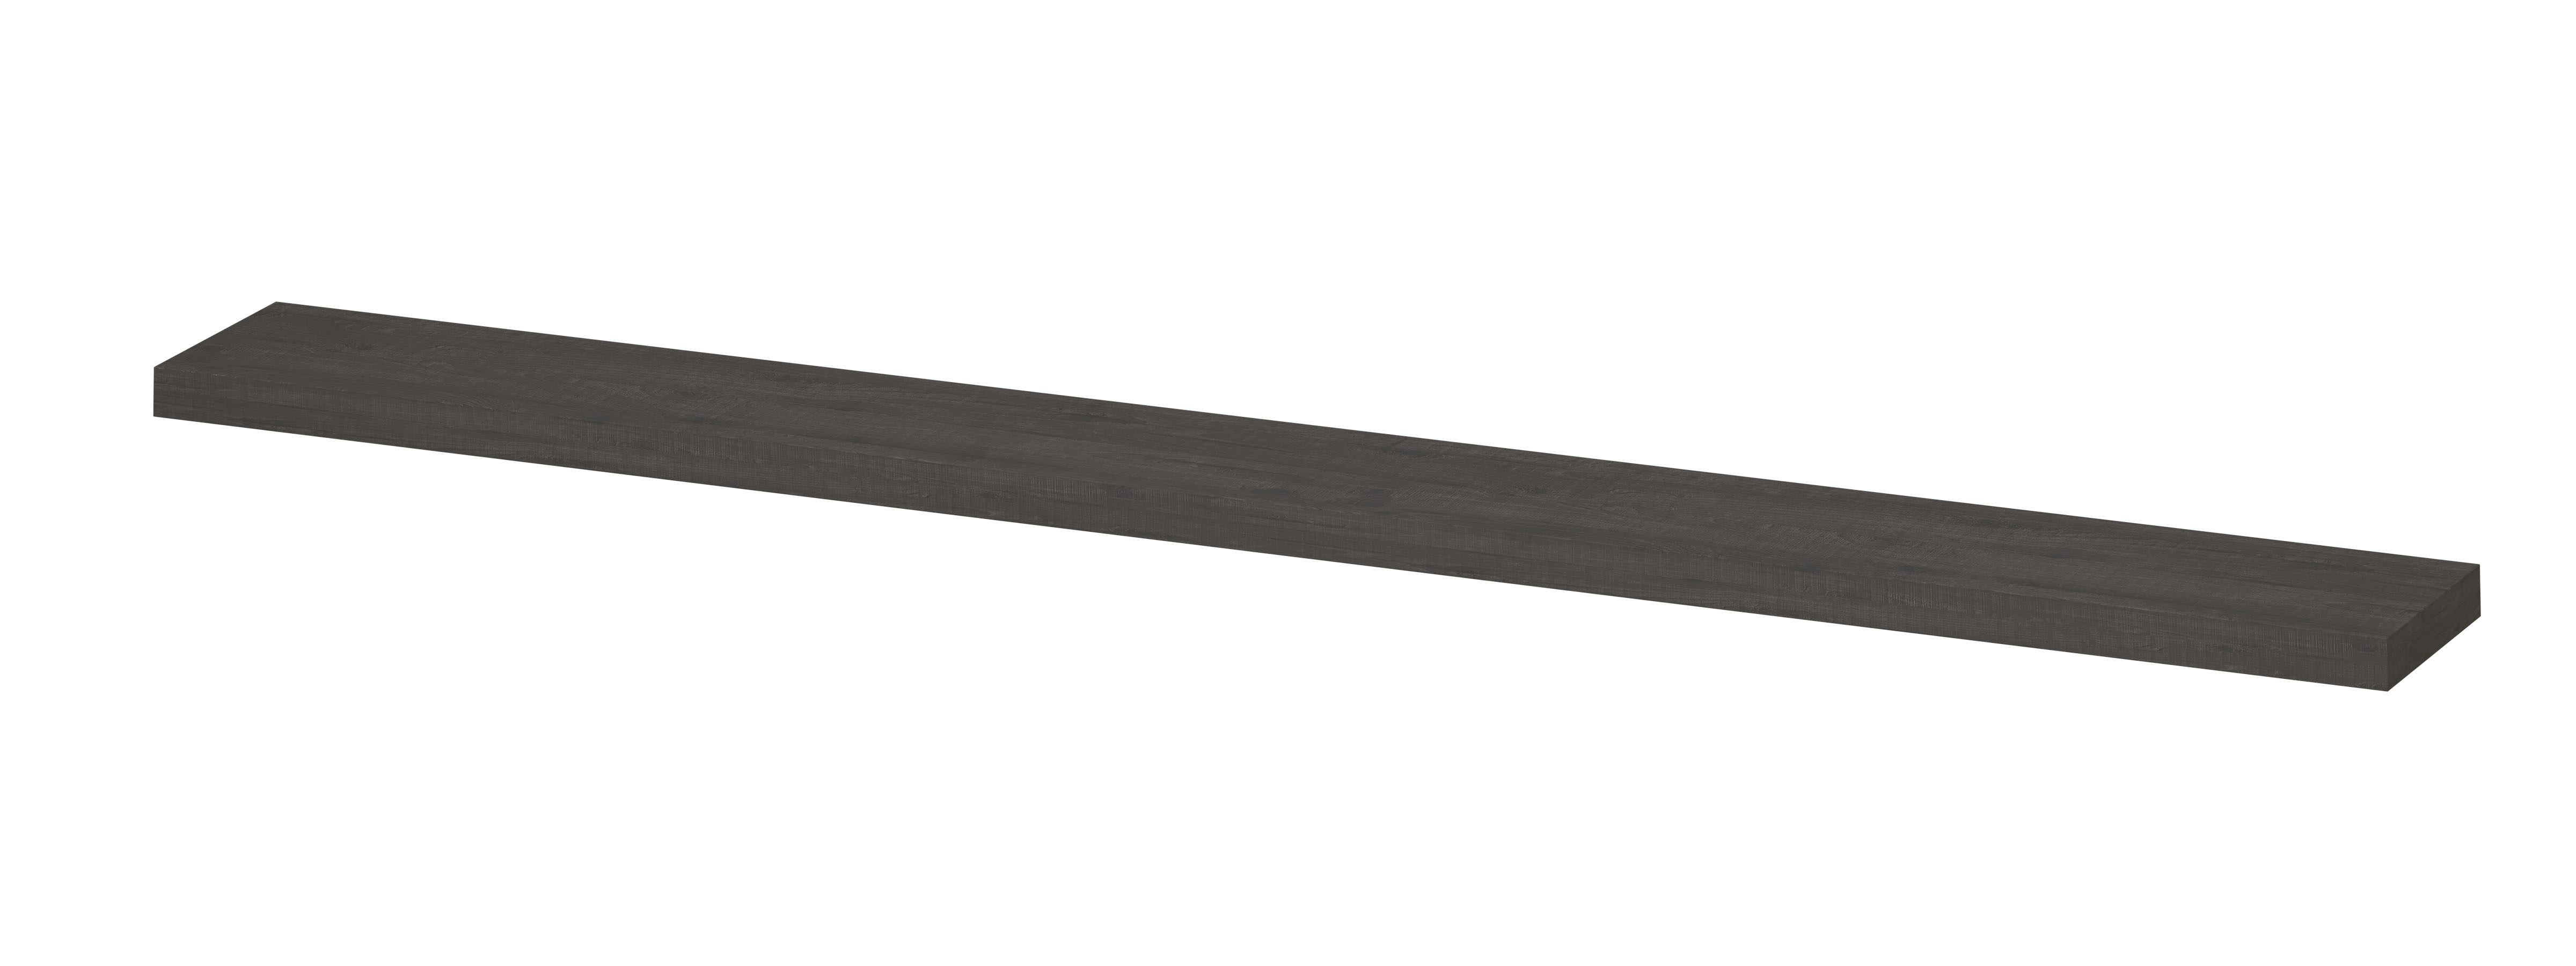 INK® wandplank in houtdecor 3,5cm dik variabele maat voor vrije ophanging inclusief blinde bevestiging 120-180x20x3,5cm, oer grijs